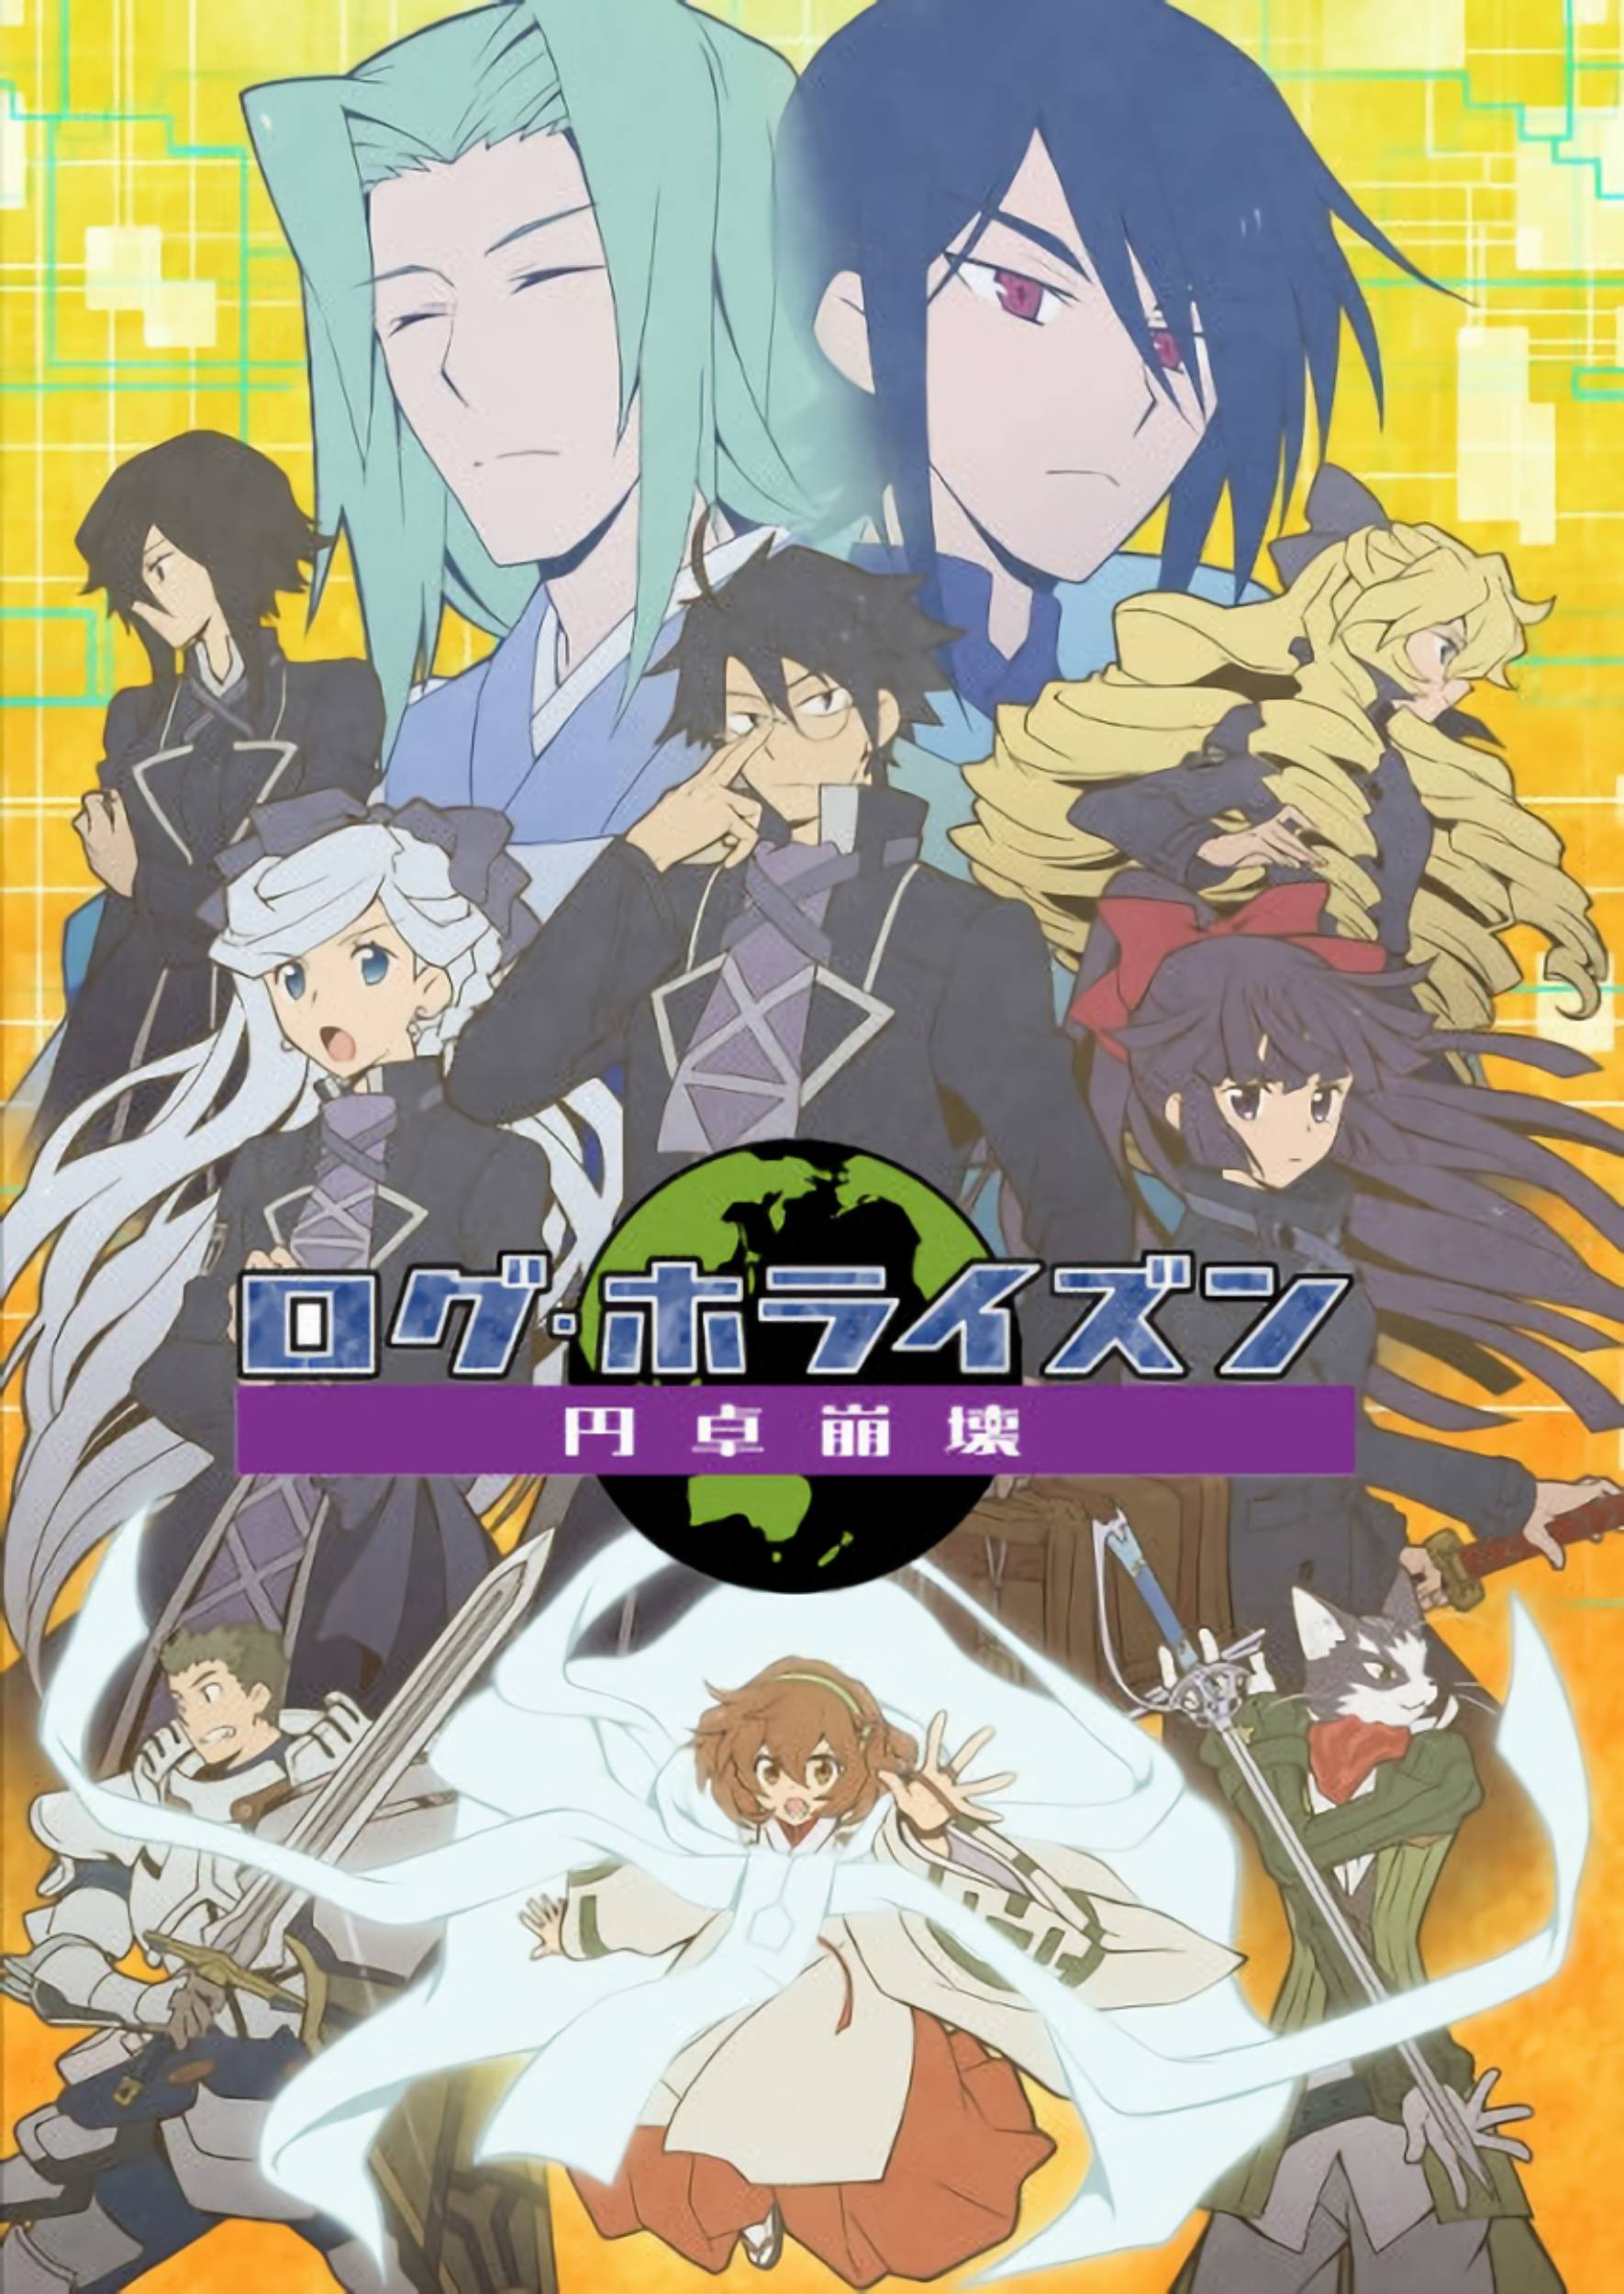 Anime and manga news- Log Horizon Season 3